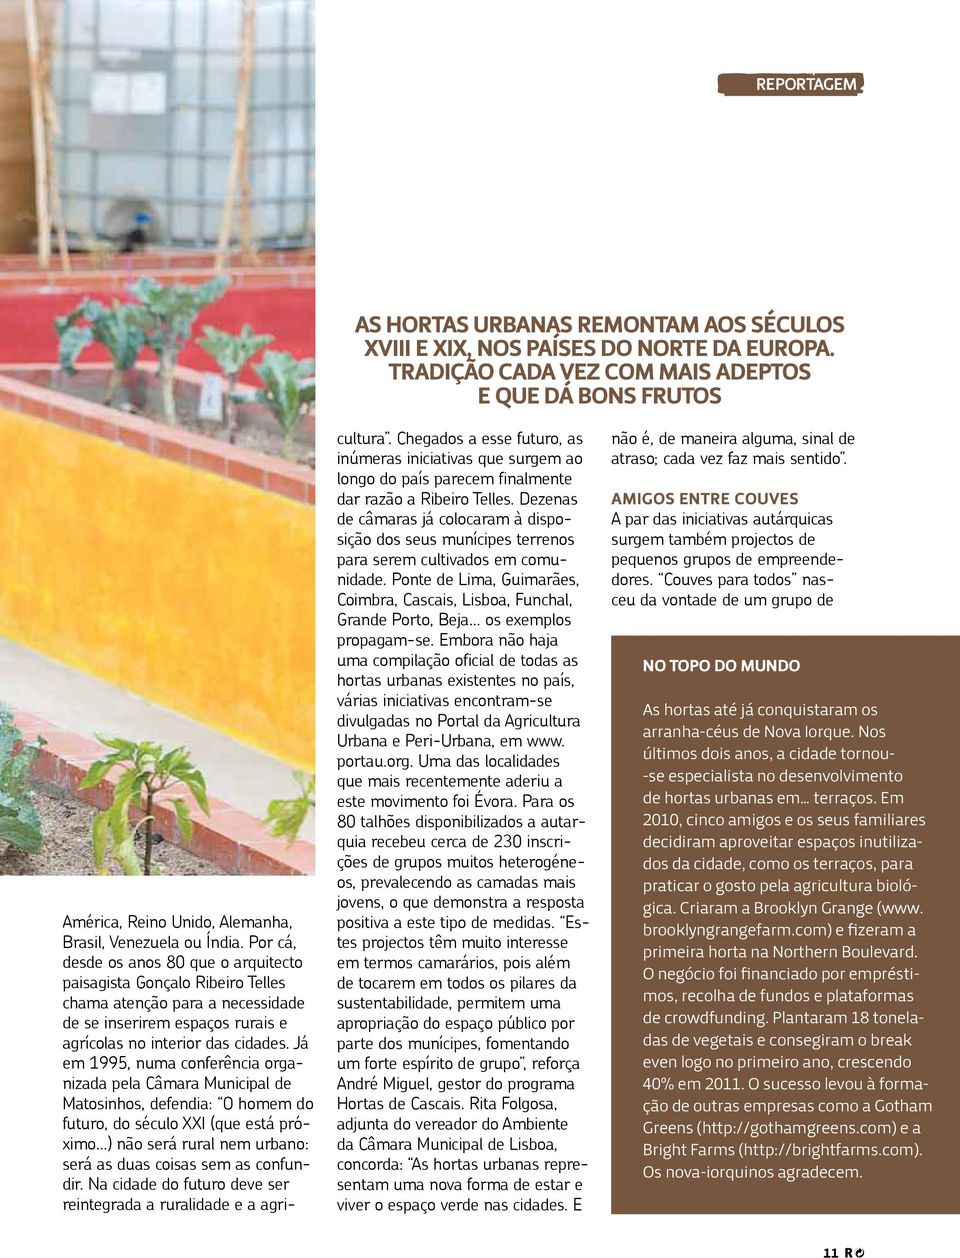 Por cá, desde os anos 80 que o arquitecto paisagista Gonçalo Ribeiro Telles chama atenção para a necessidade de se inserirem espaços rurais e agrícolas no interior das cidades.